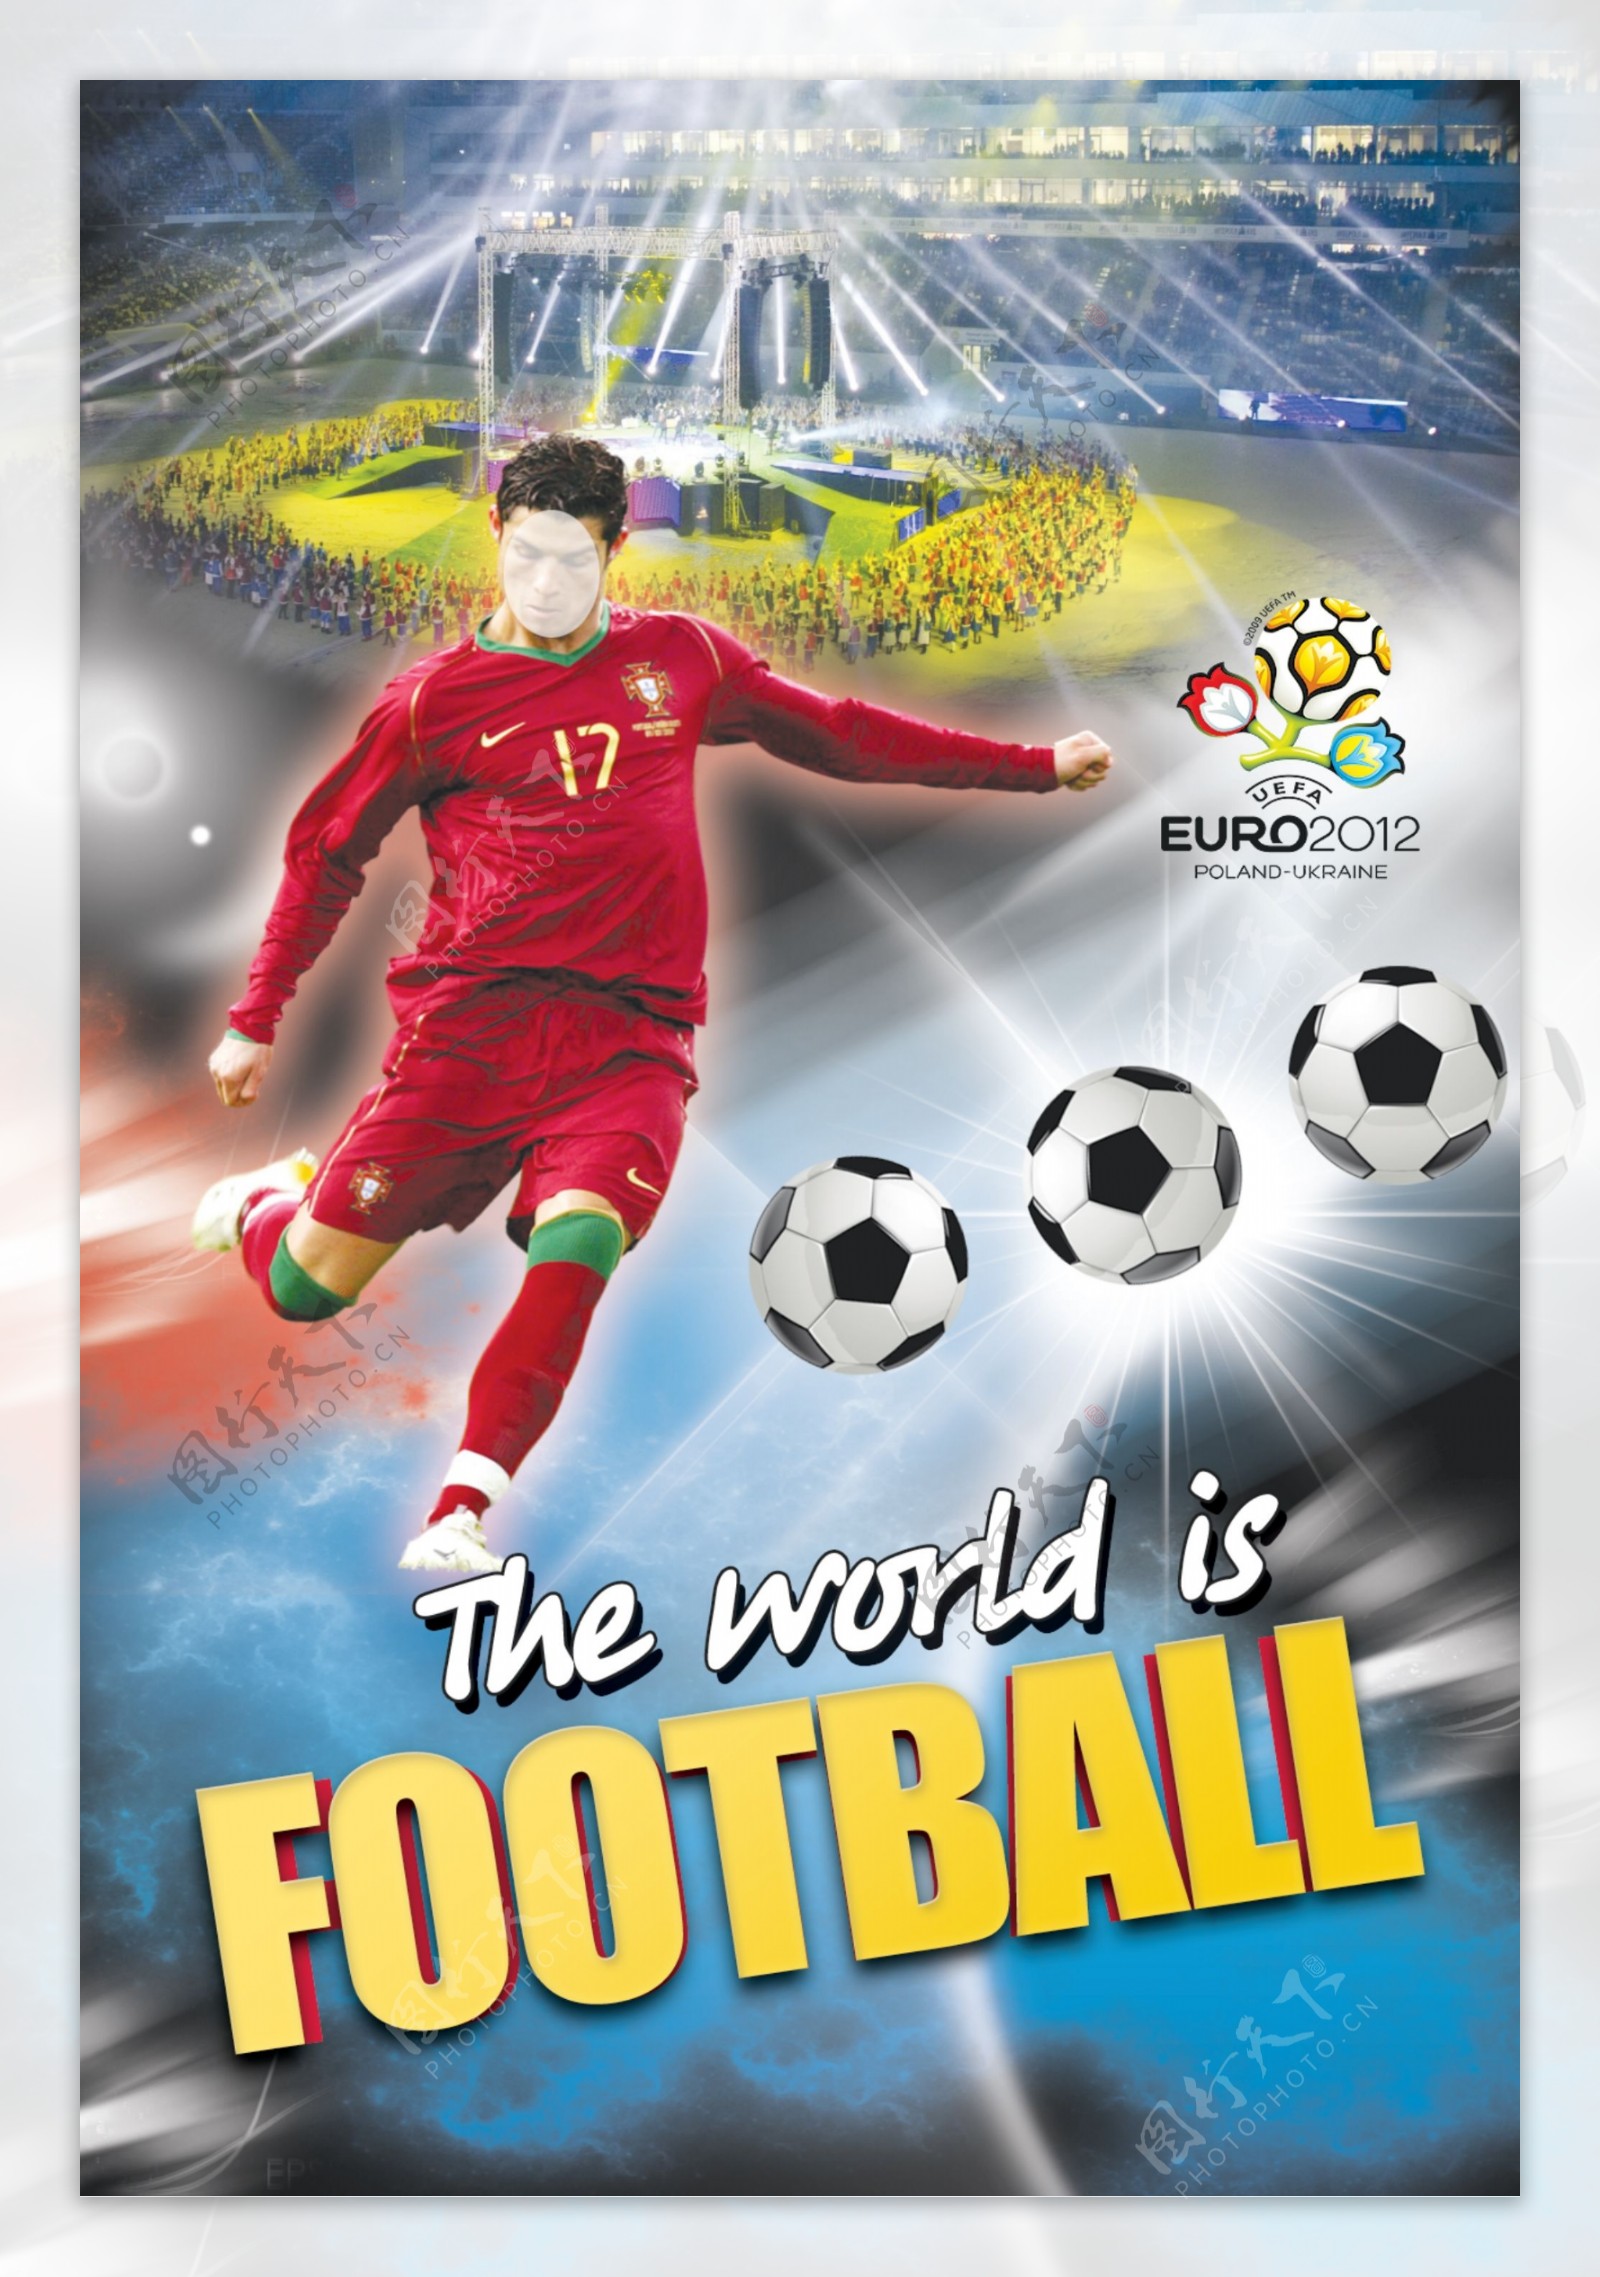 欧洲杯足球赛主题海报C罗图片